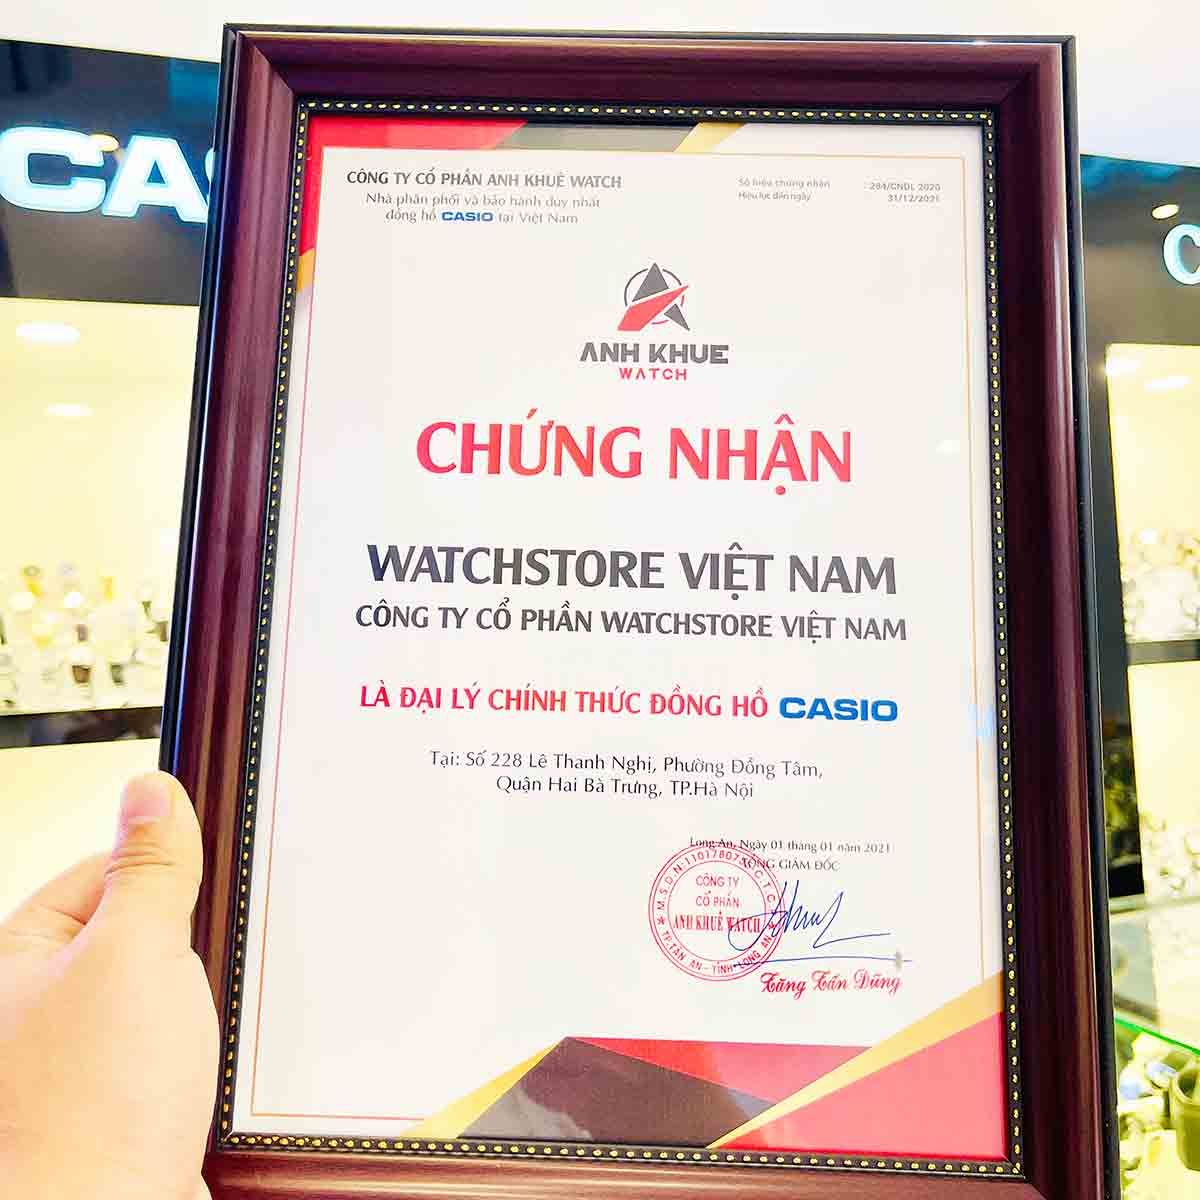 Địa chỉ bán đồng hồ chính hãng tại Hà Nội - Cam kết chất lượng - Ảnh 3